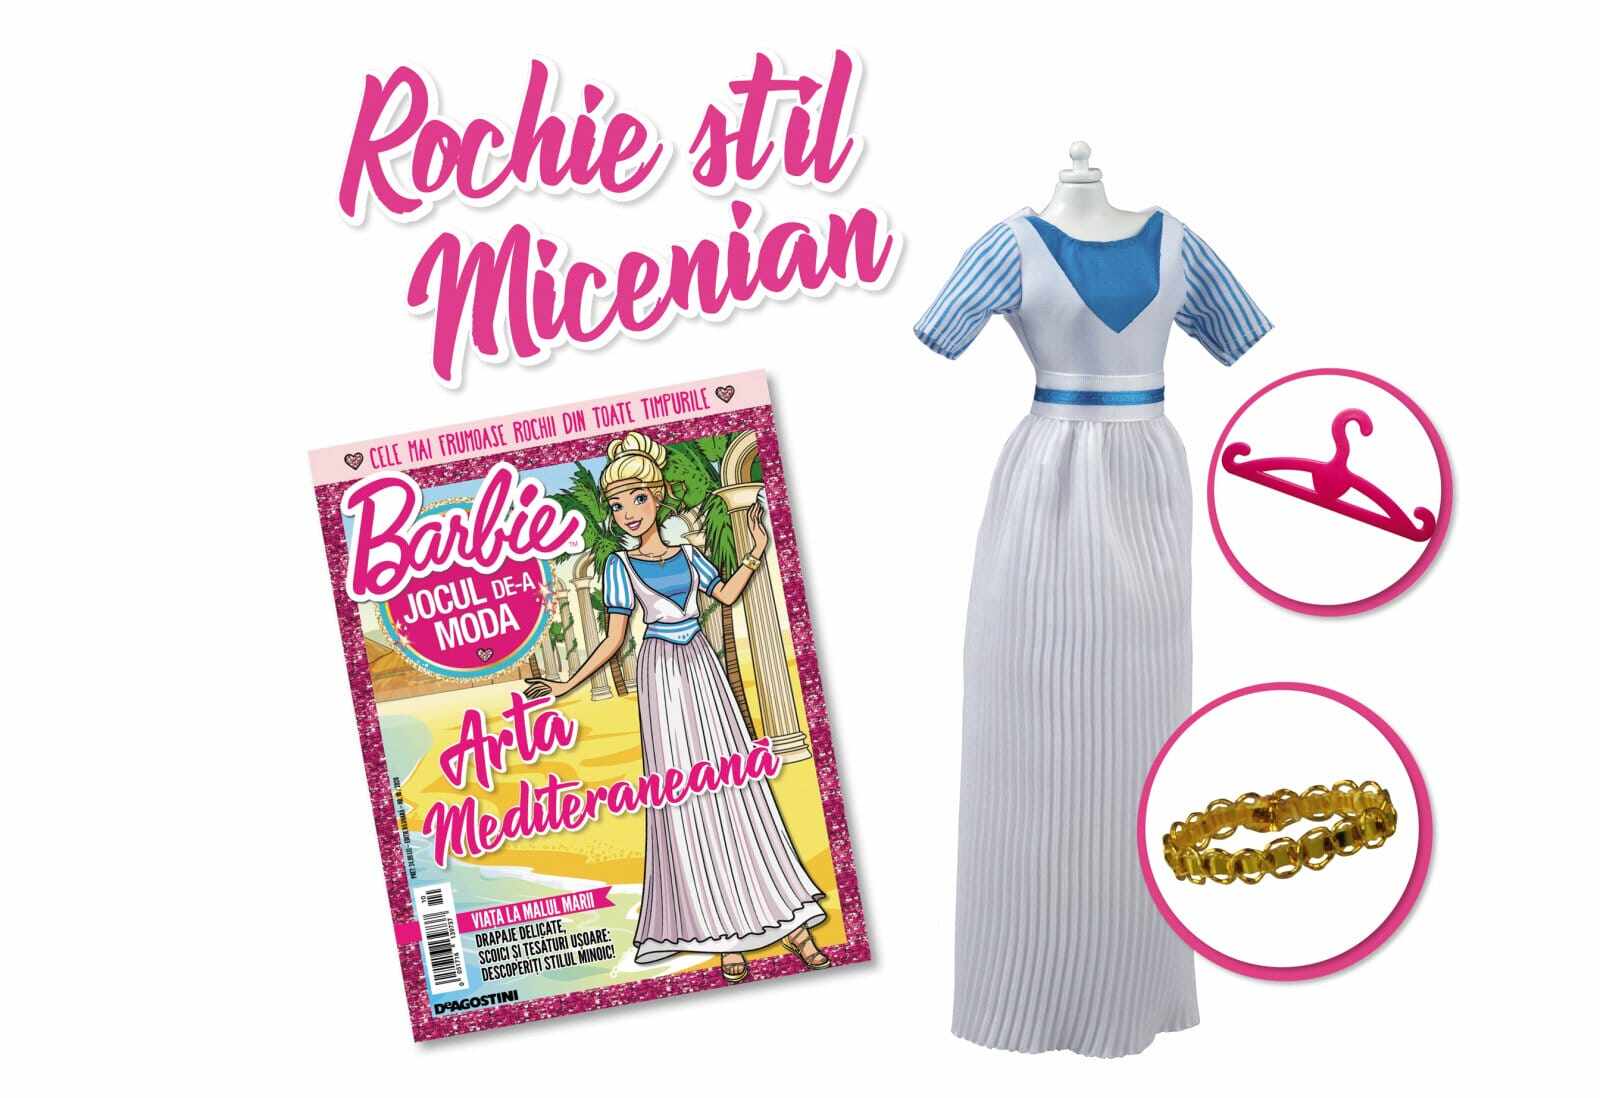 Colectia Barbie Jocul de-a Moda - Nr. 10 - Rochie stil micenian, DeAgostini, 2-3 ani +